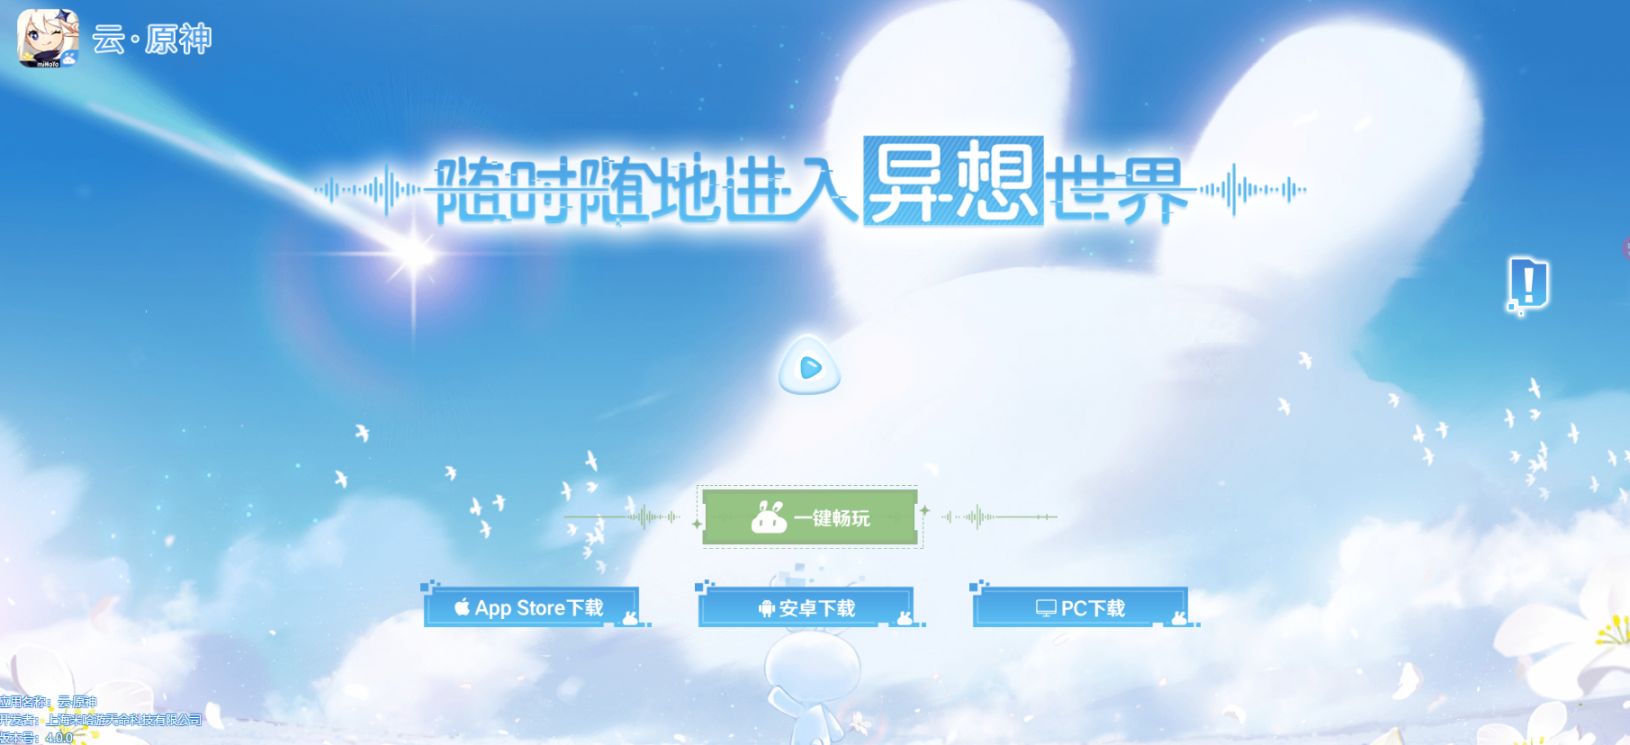 米哈游推出网页版《云·原神》 无需下载包体即可游玩